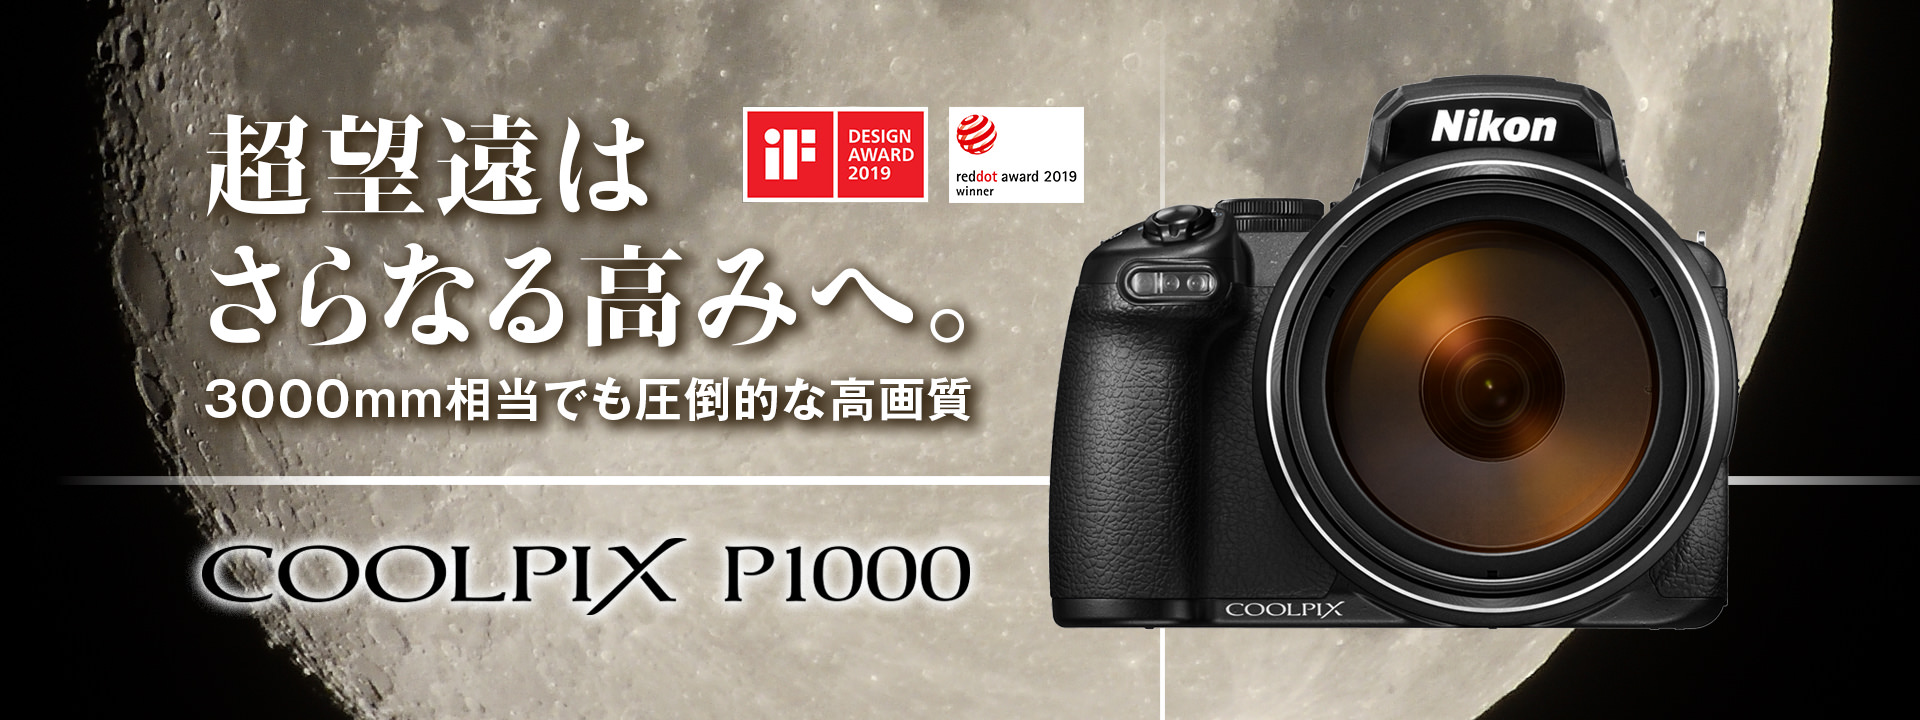 【新品】ニコン/Nikon クールピクス P1000/COOLPIX P1000